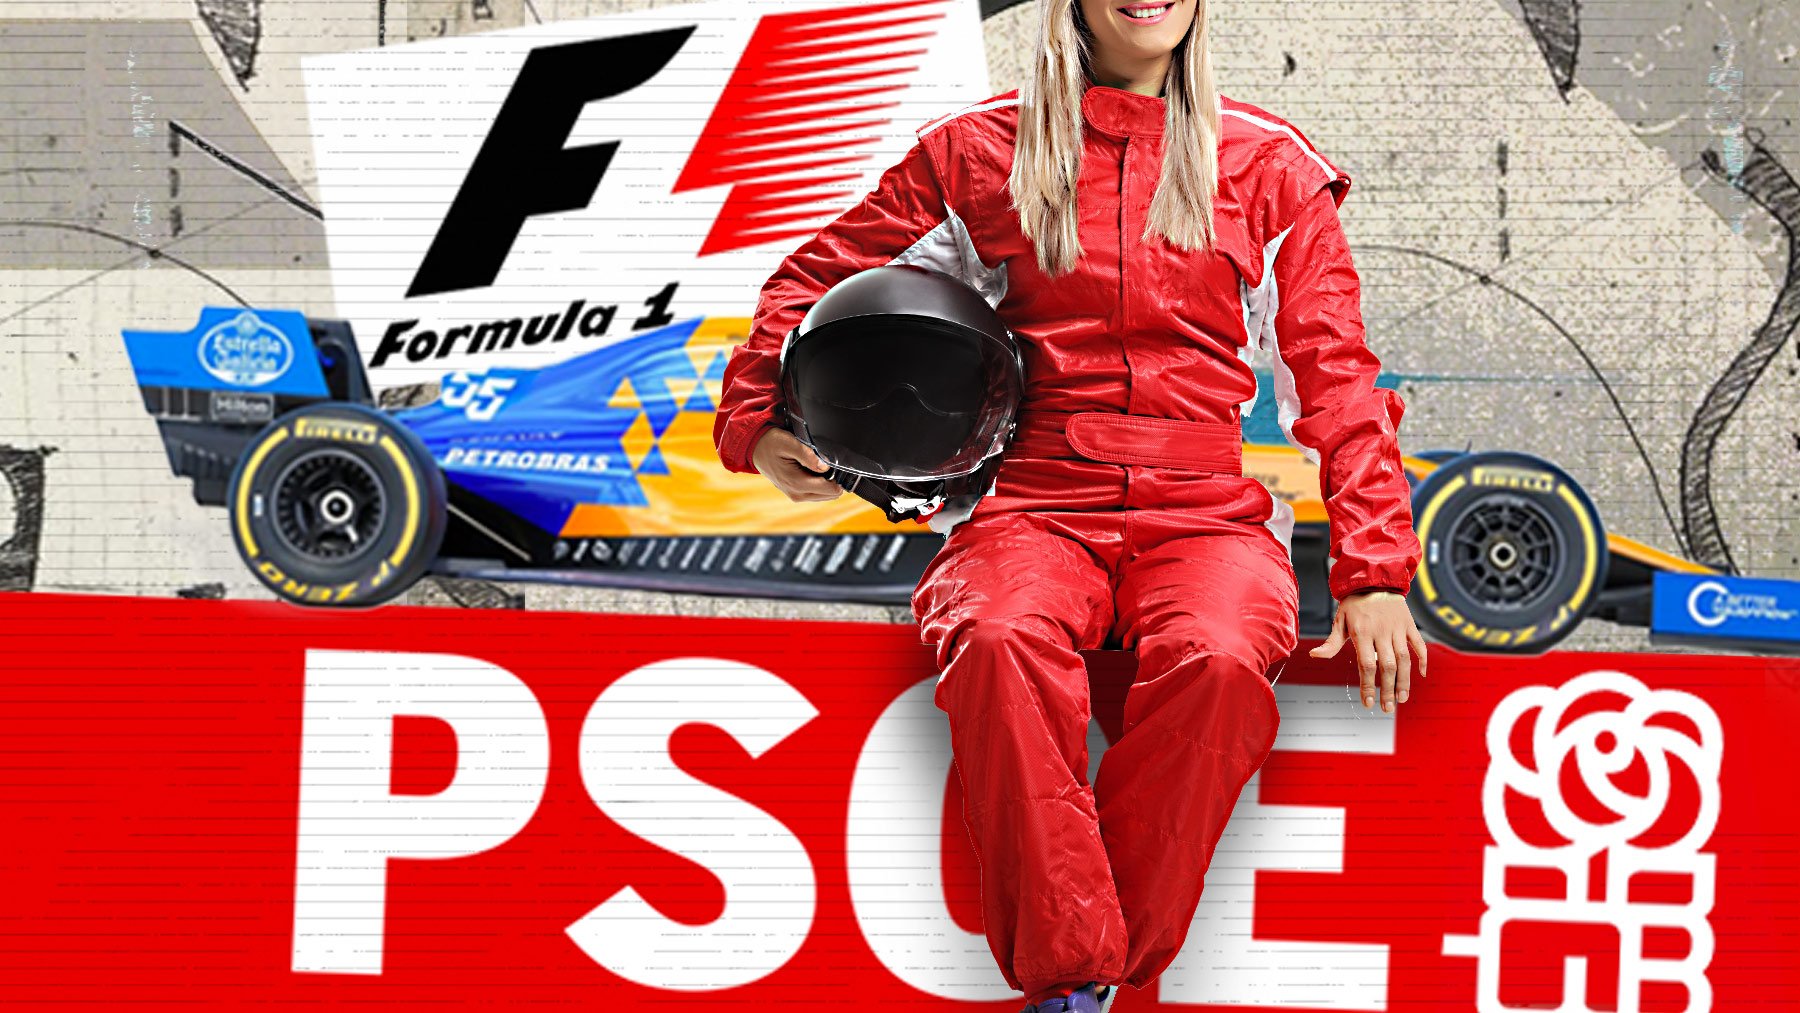 El PSOE quiere una ‘pilota’ en Fórmula 1: subvencionará a una mujer para que compita con Alonso y Sainz